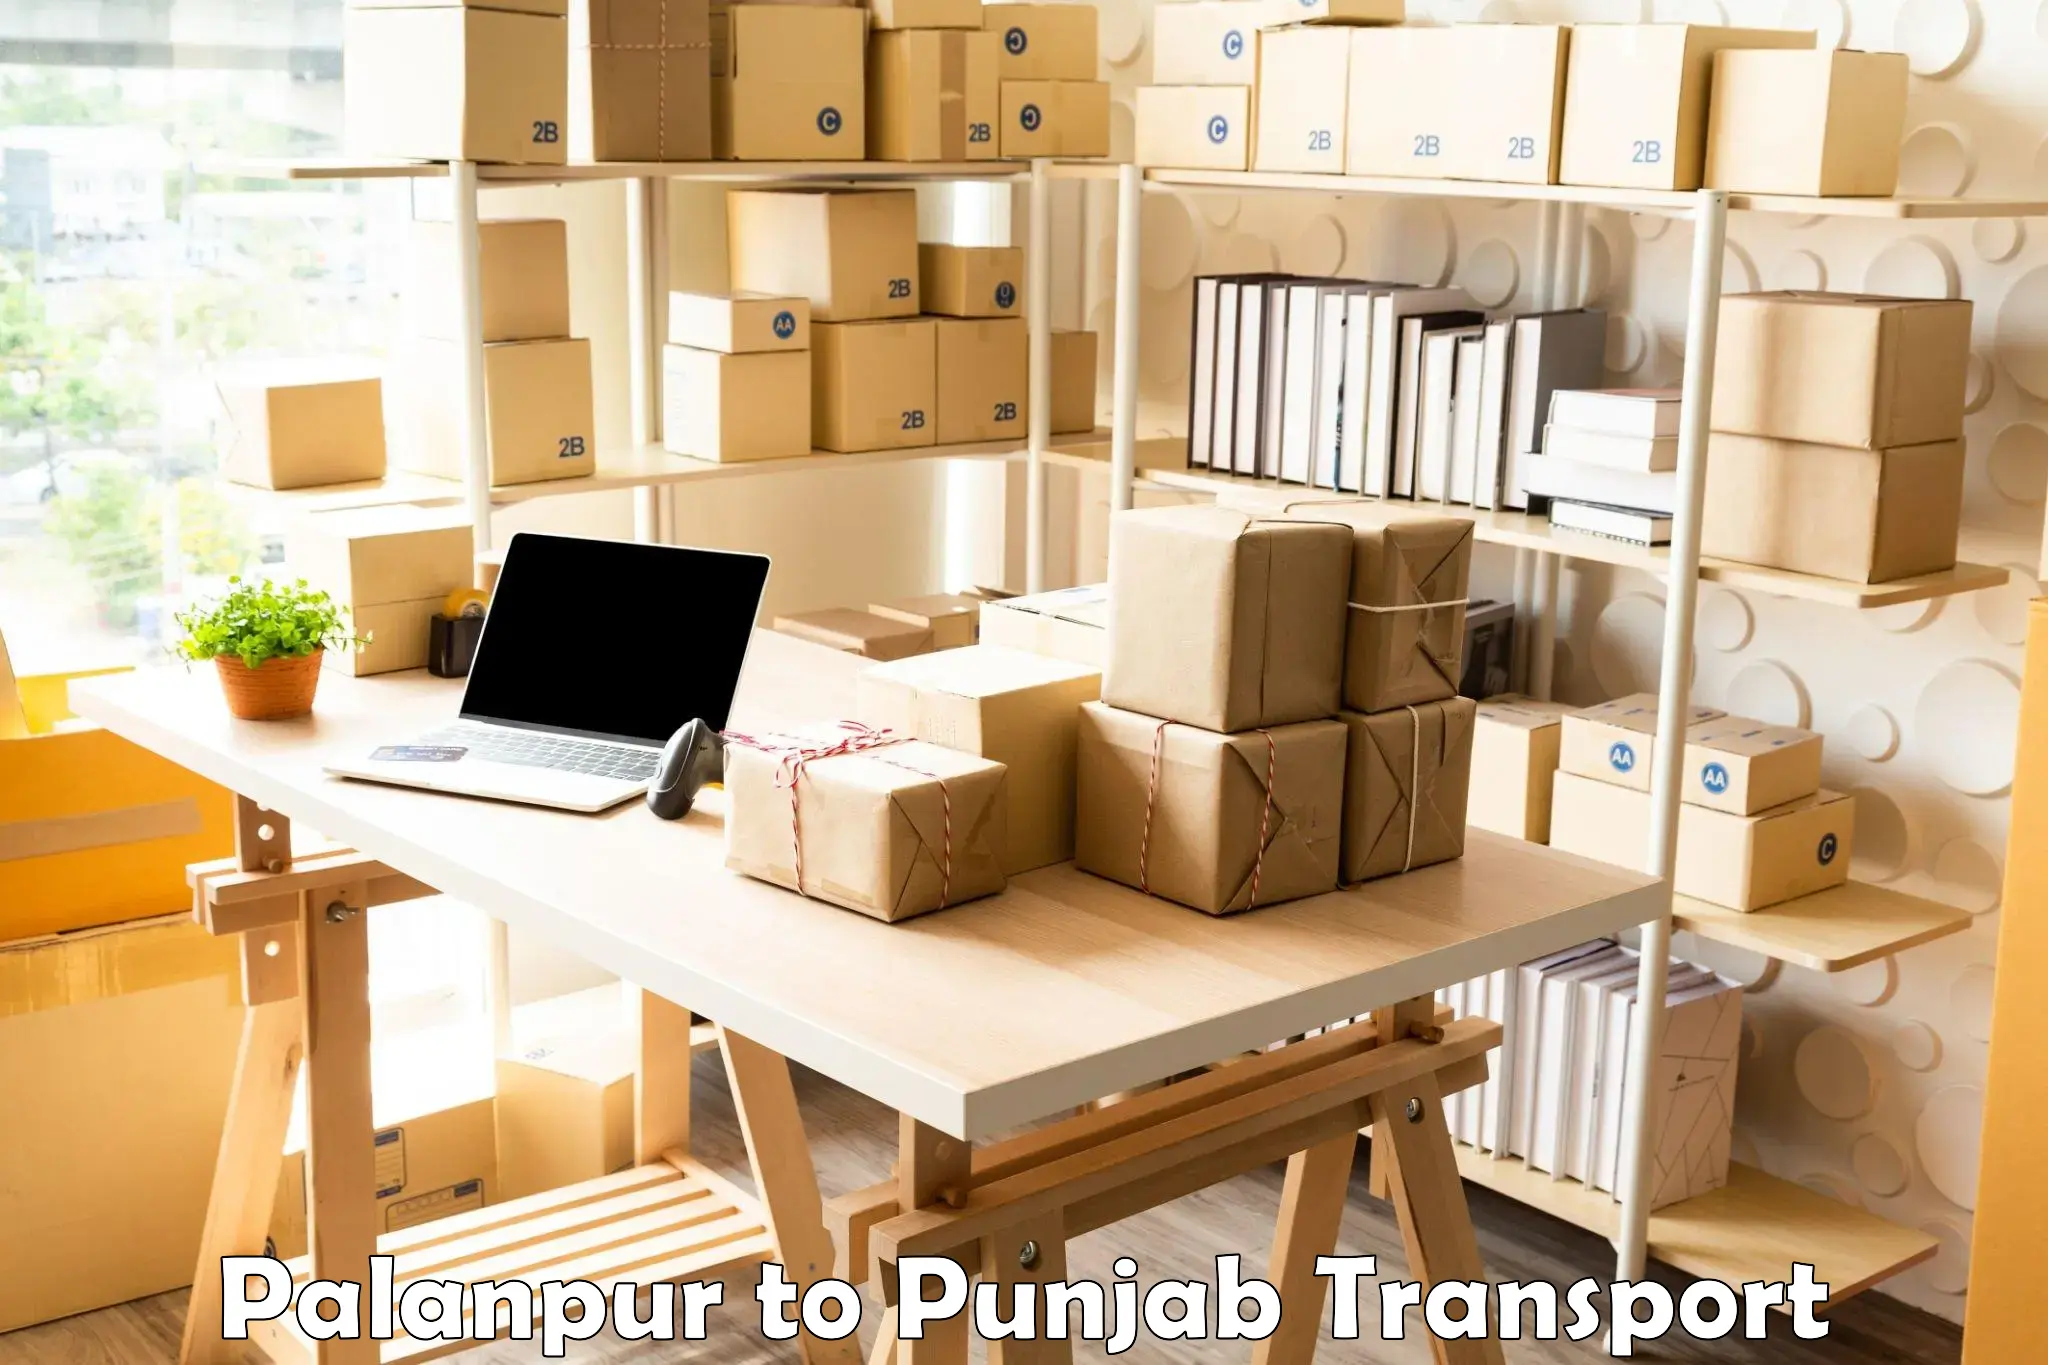 Transport in sharing Palanpur to Punjab